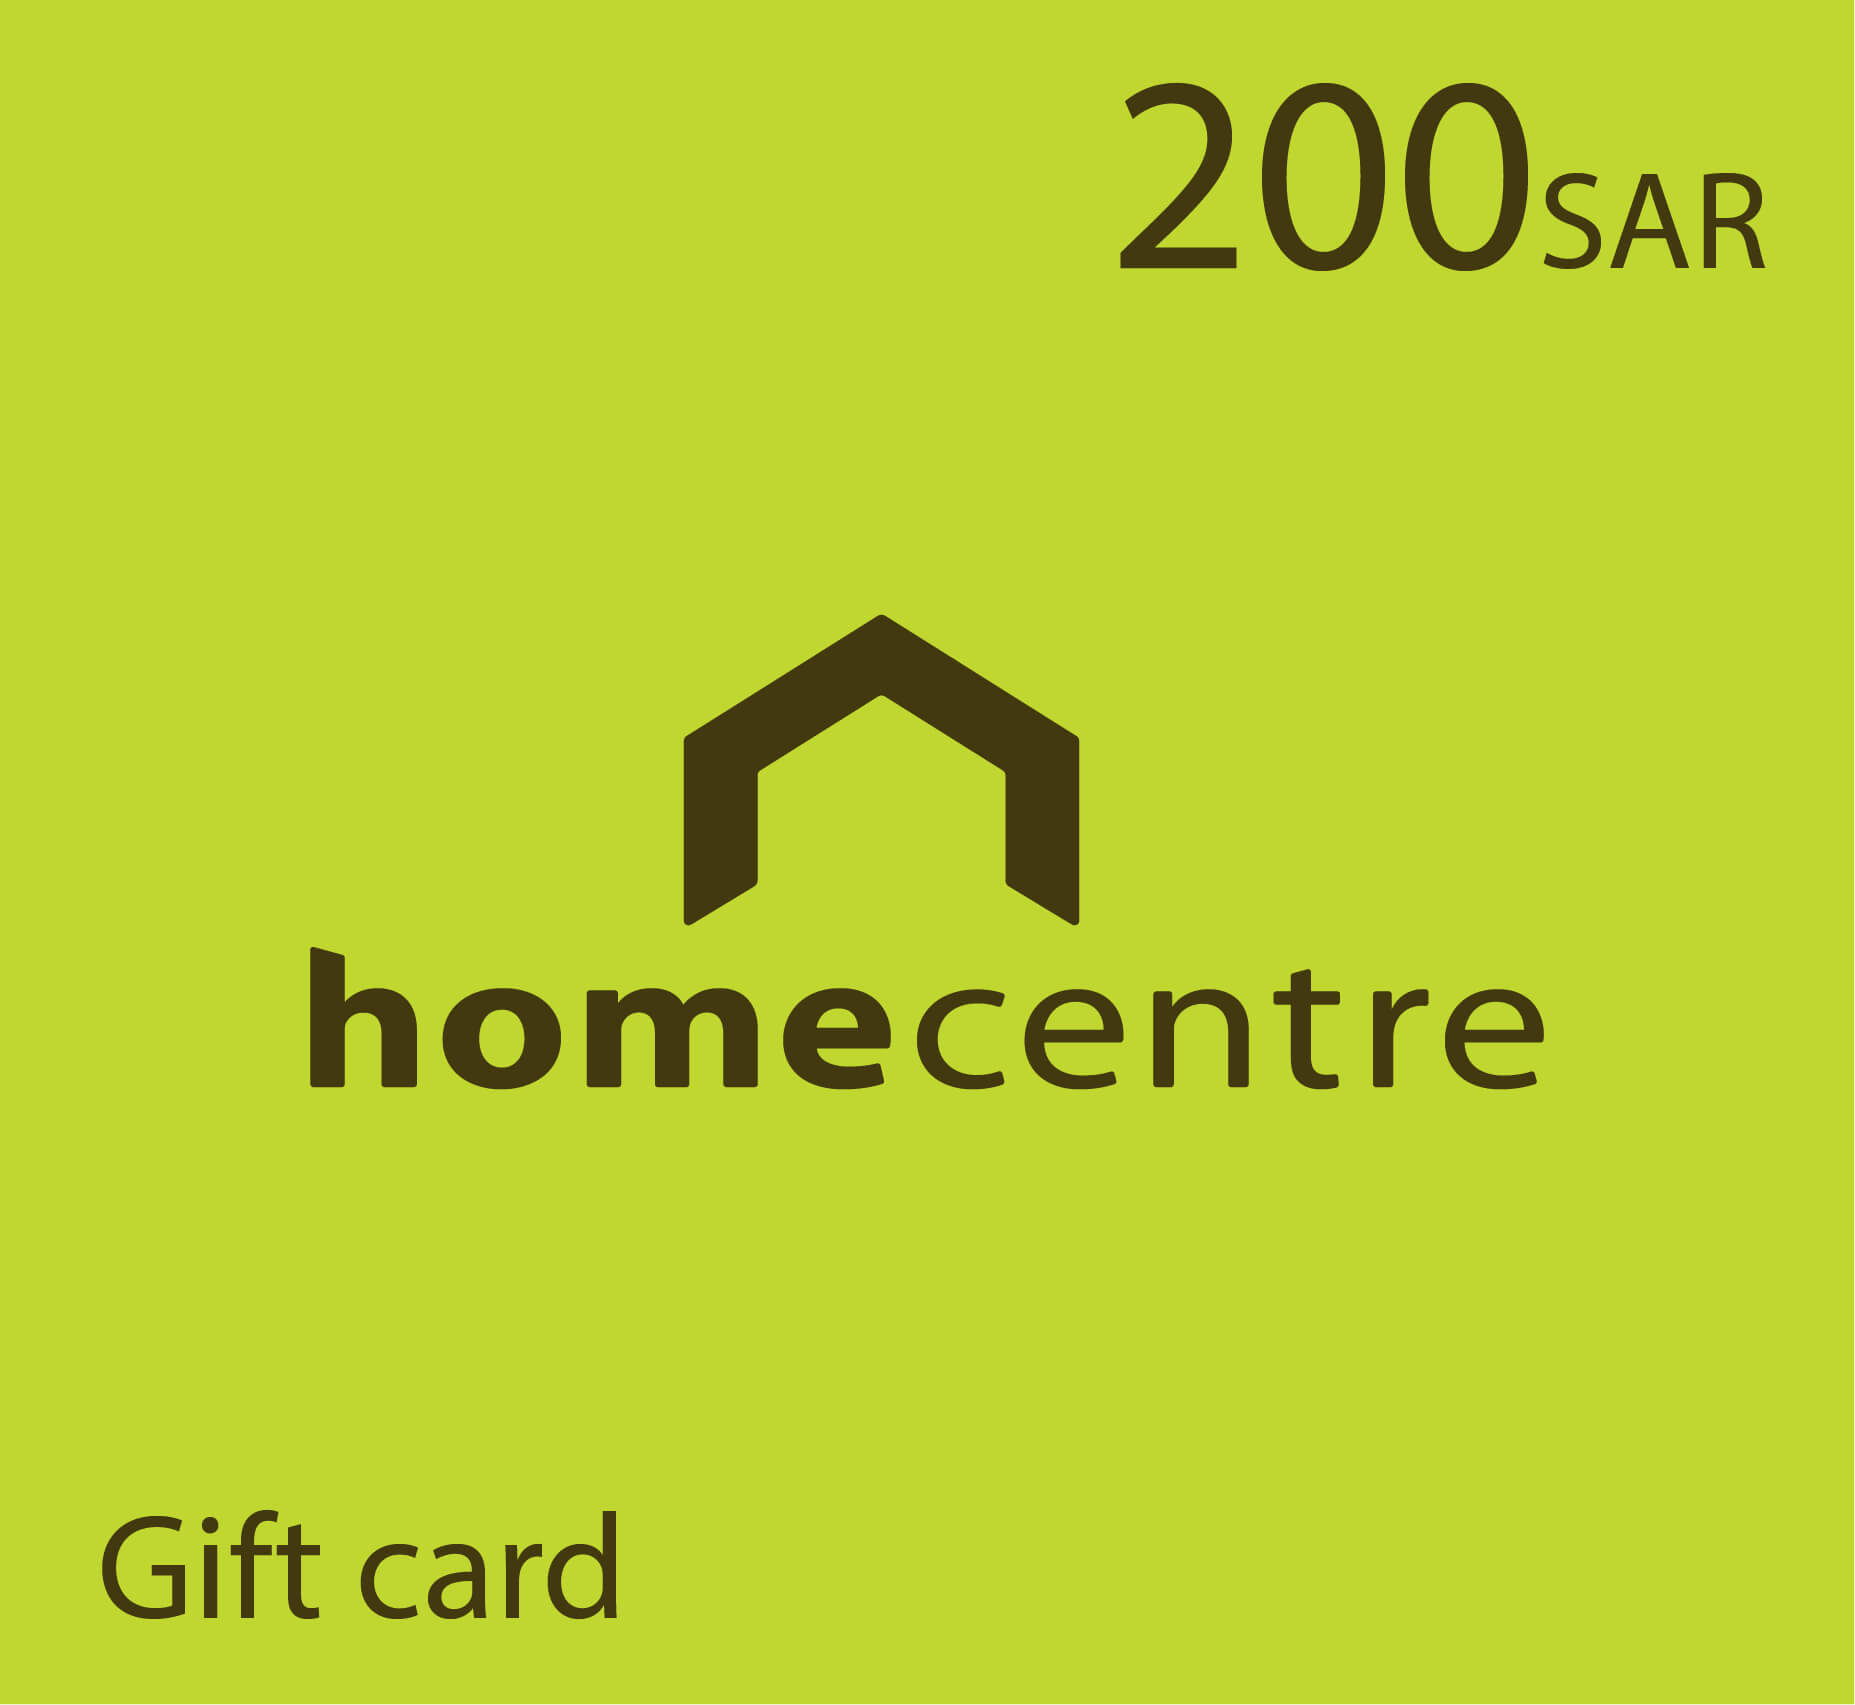 Home Center Gift card - 200 SAR